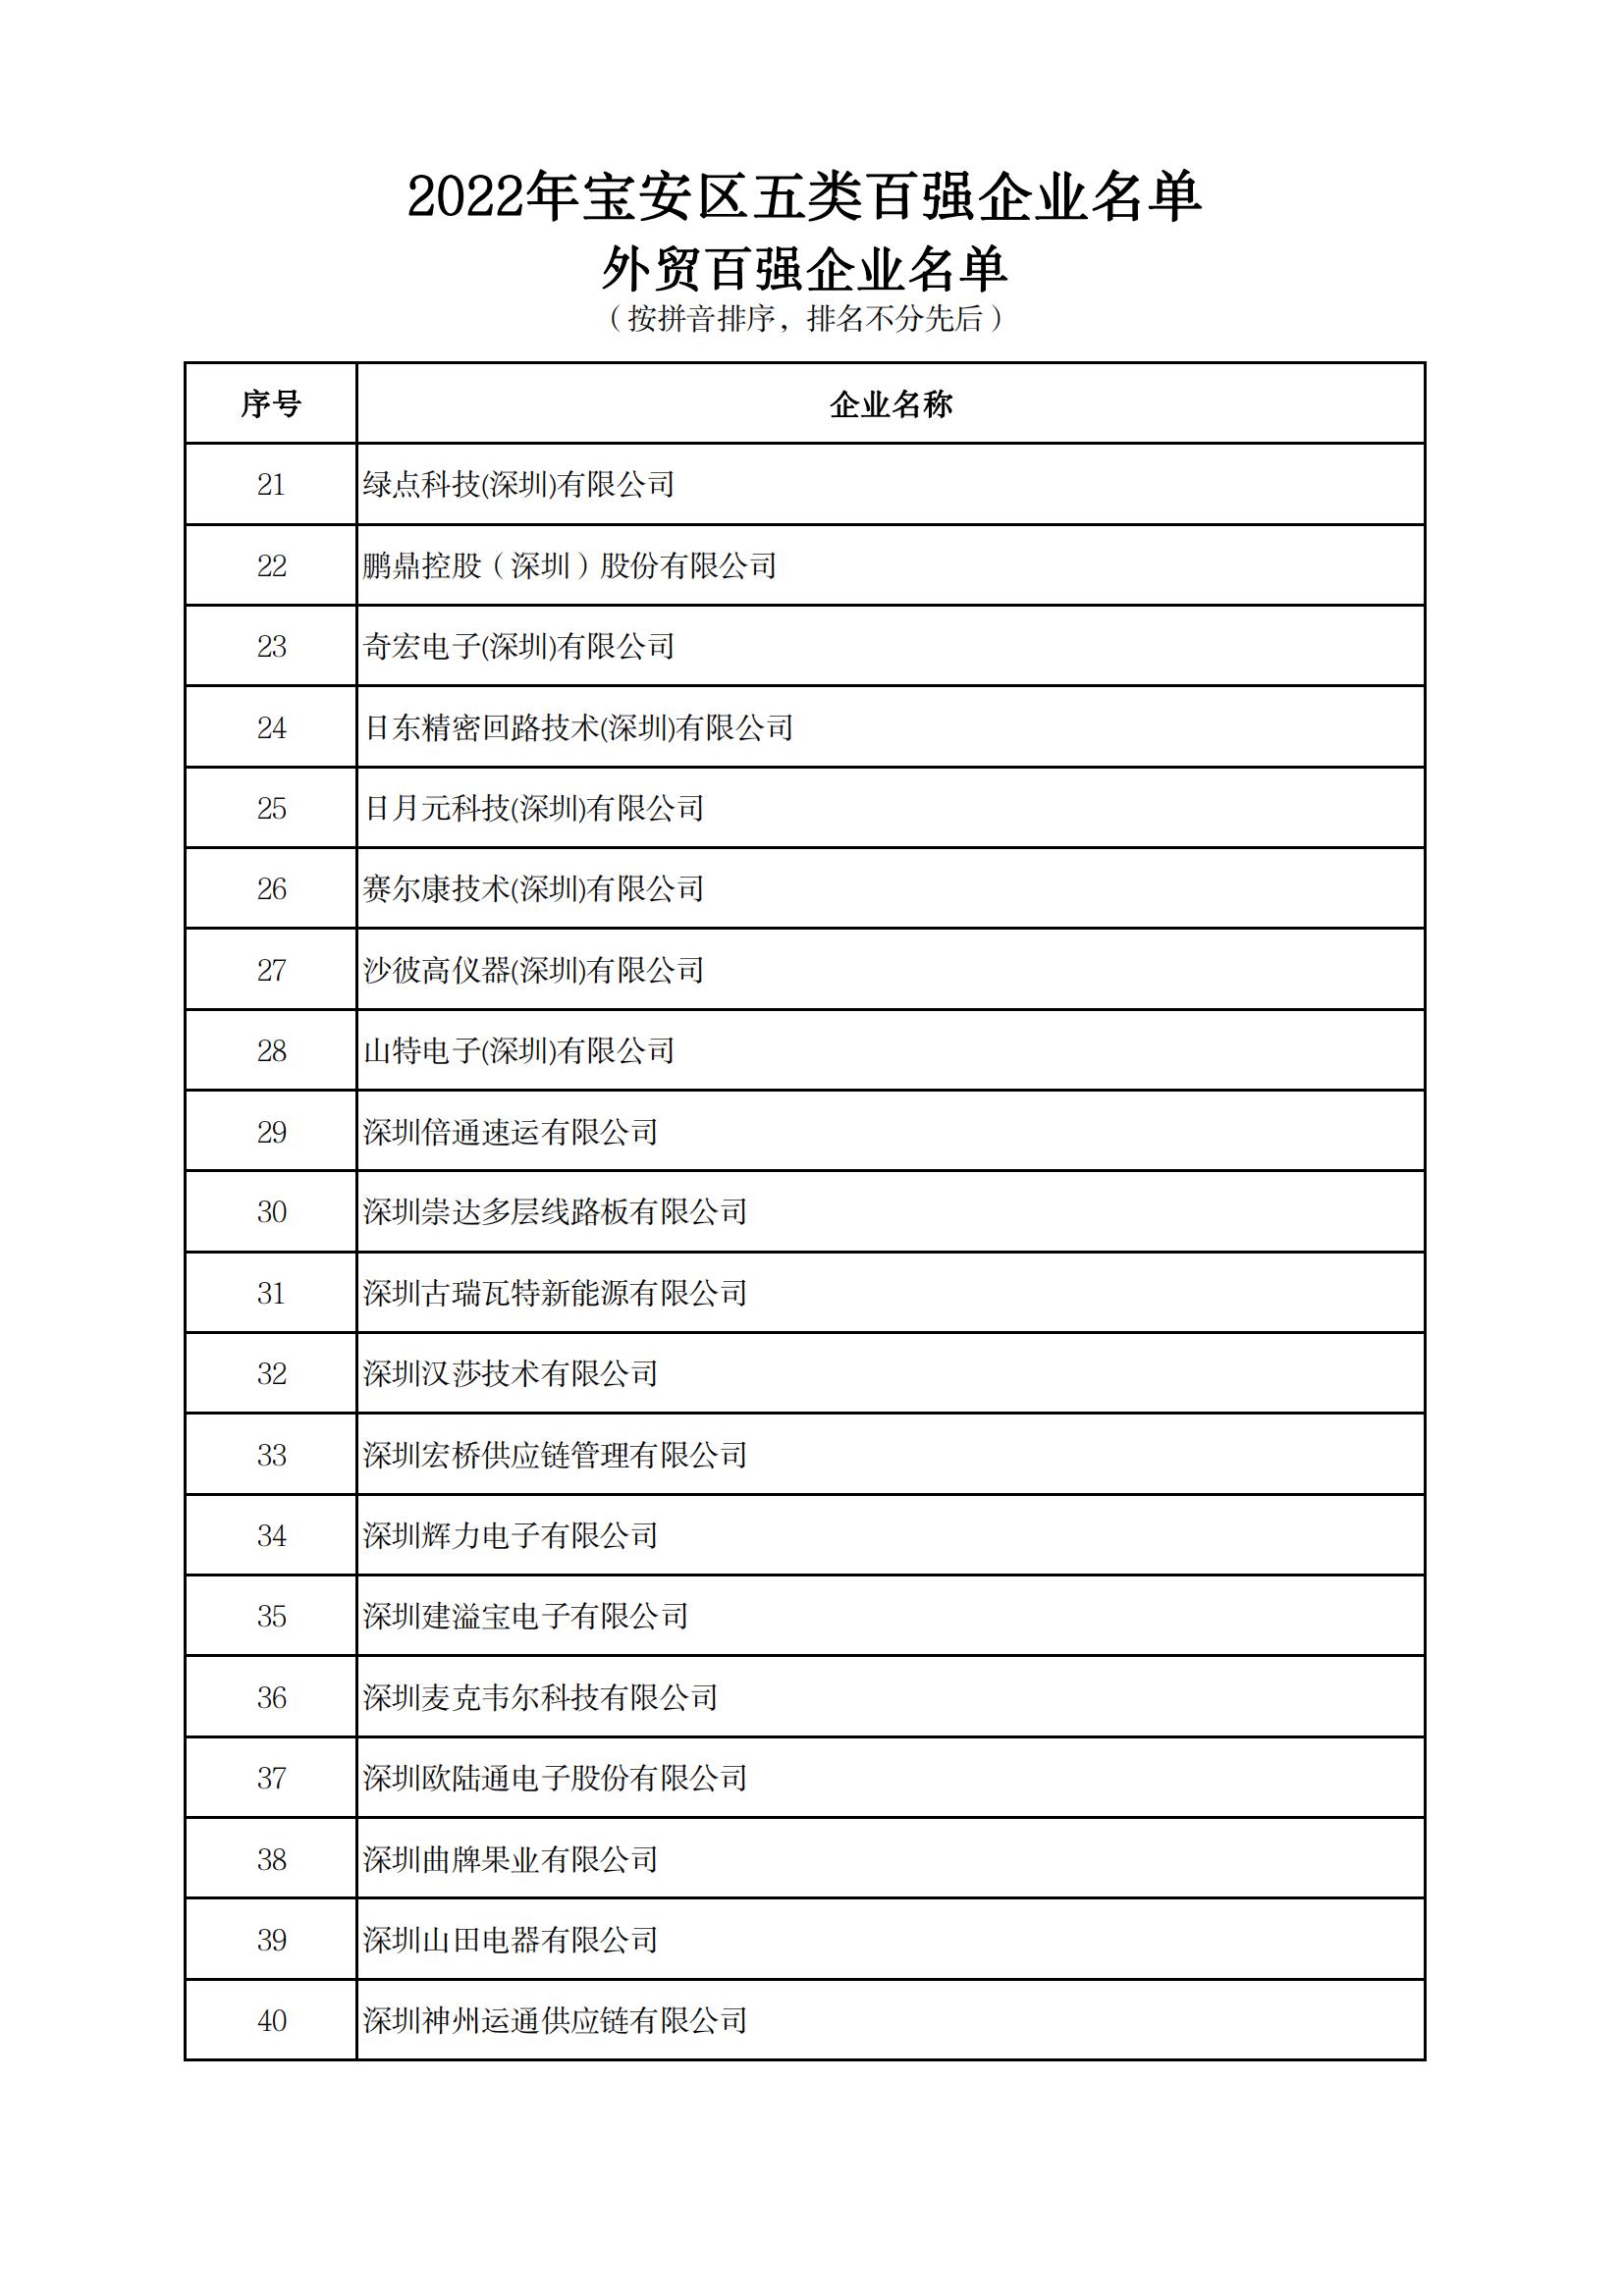 附件：2022年宝安区五类百强企业名单_16.jpg